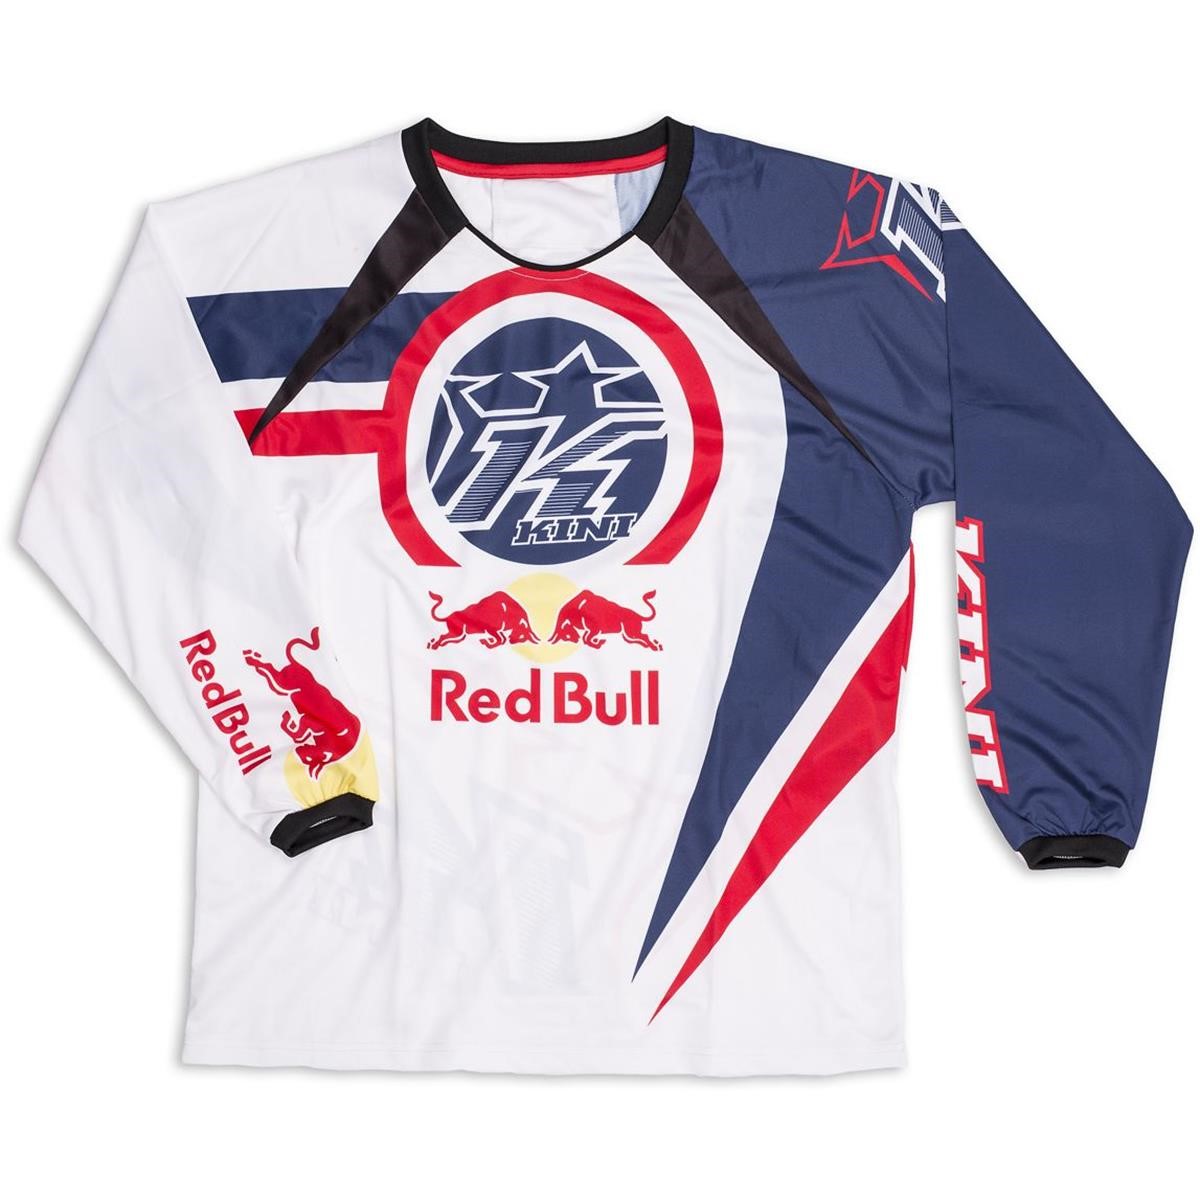 Kini Red Bull Vintage